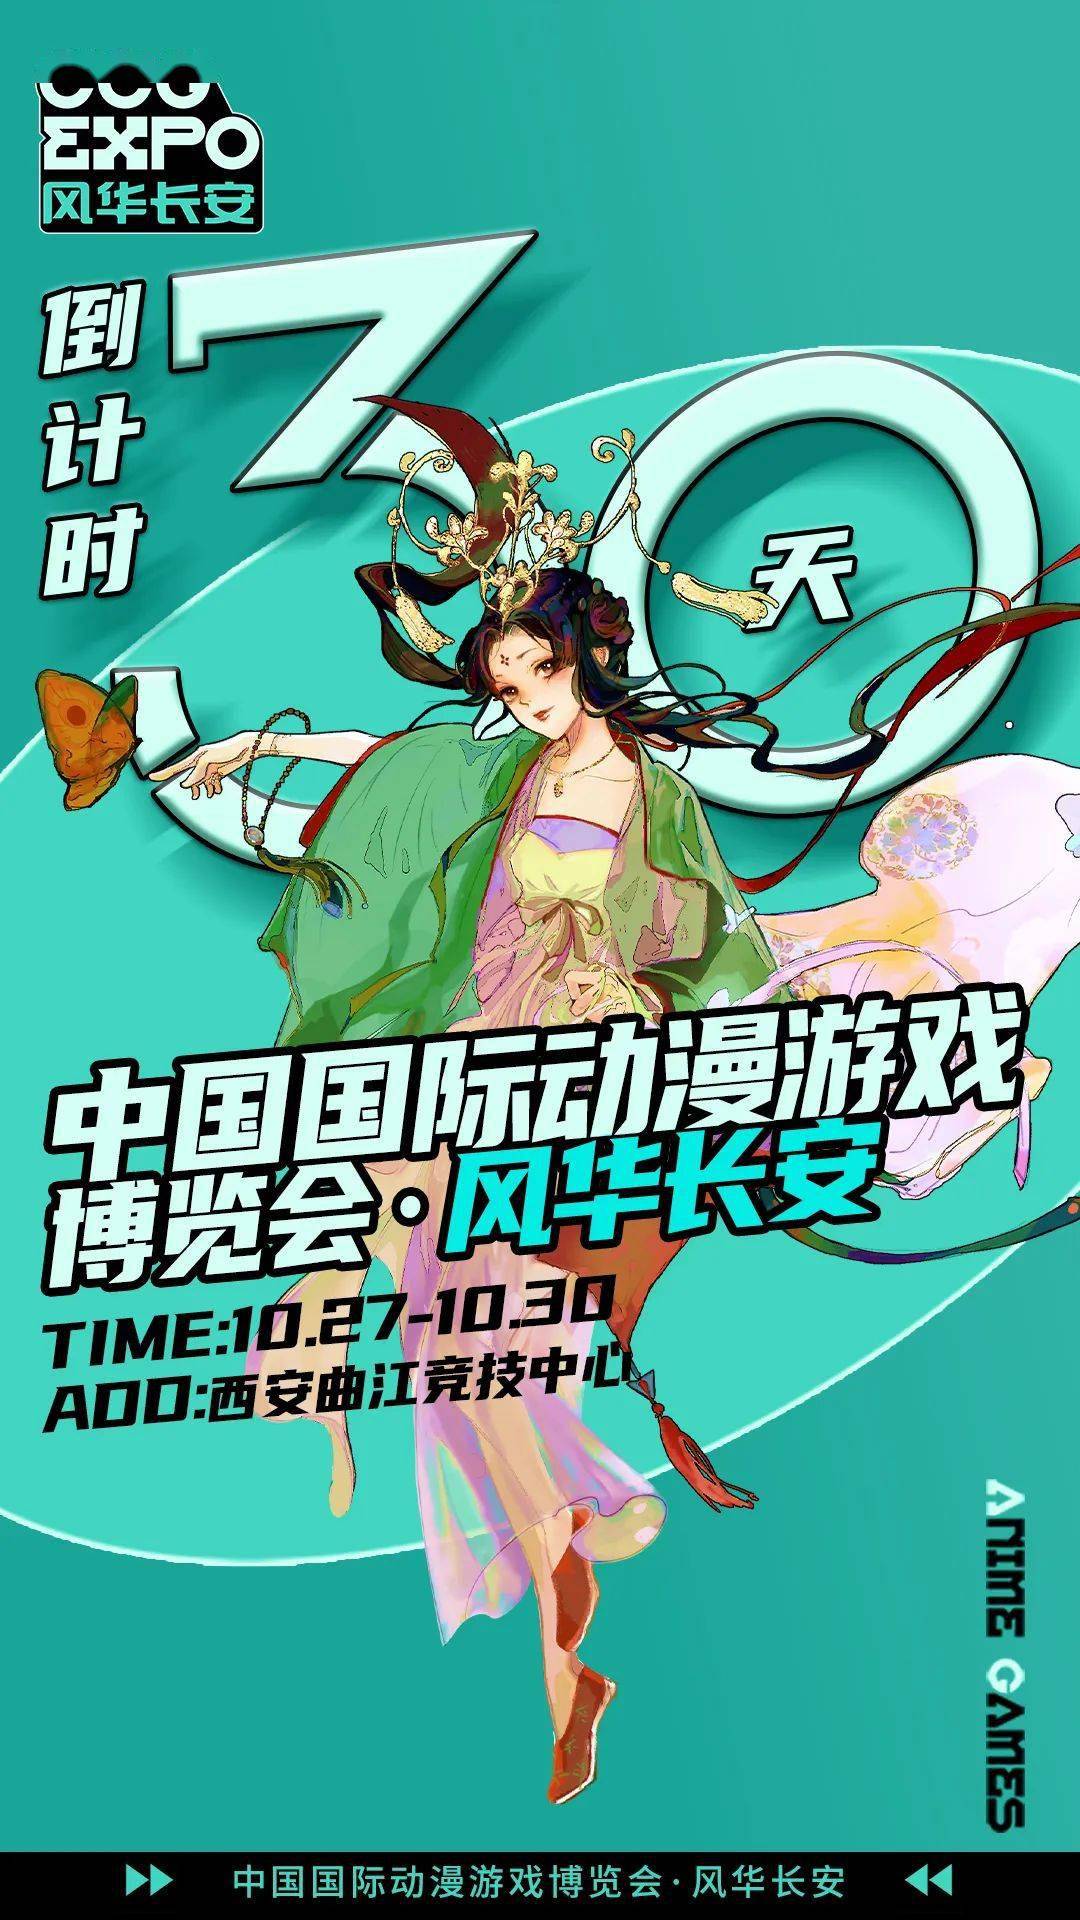 中国国际动漫游戏博览会即将亮相西安_展会_风华_长安